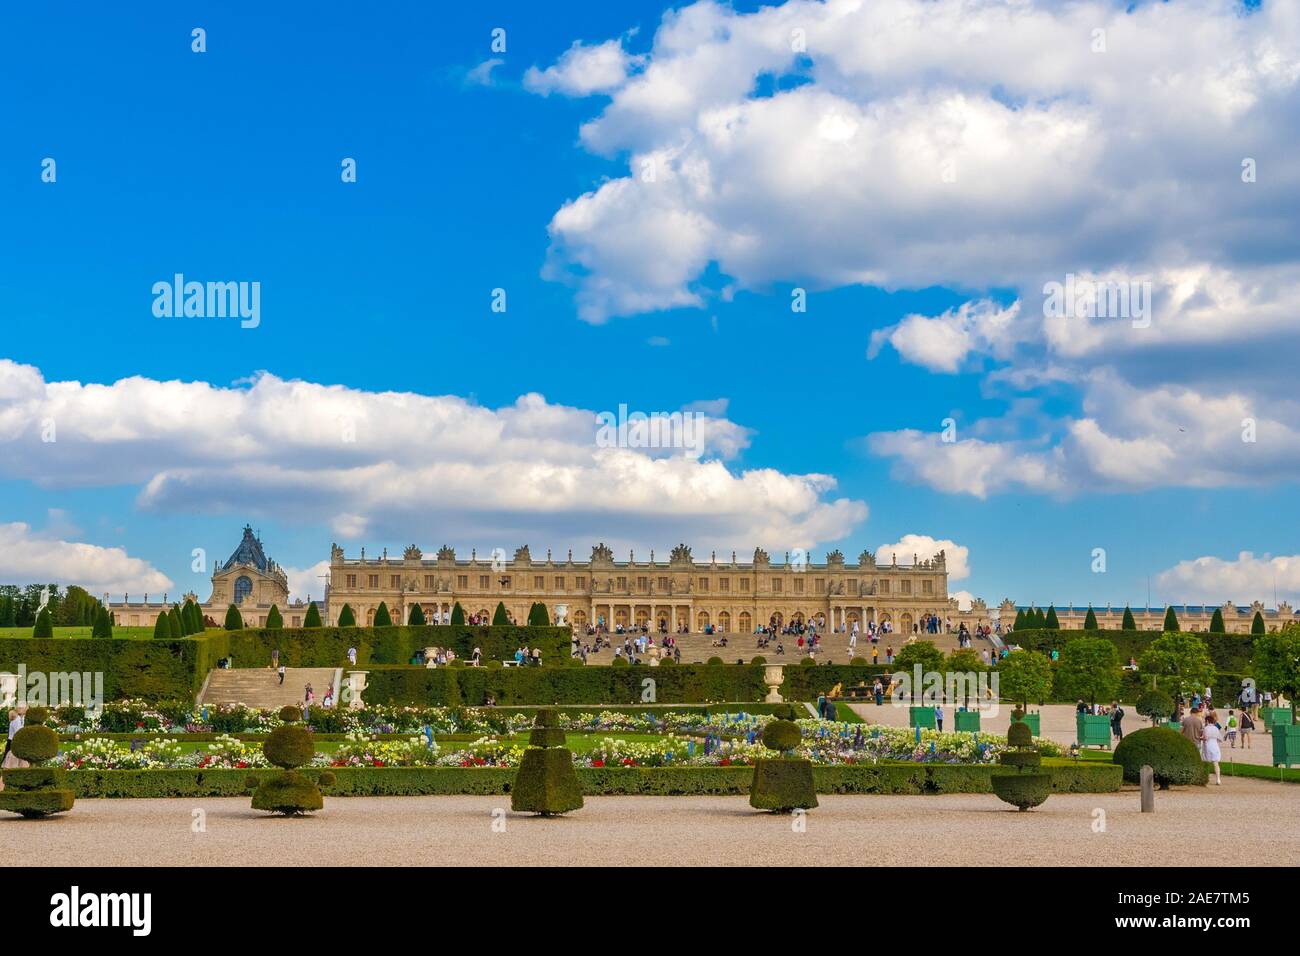 Belle vue panoramique sur la façade ouest du château de Versailles dont la chapelle royale de Latona parterre du situé dans le jardin sur une... Banque D'Images